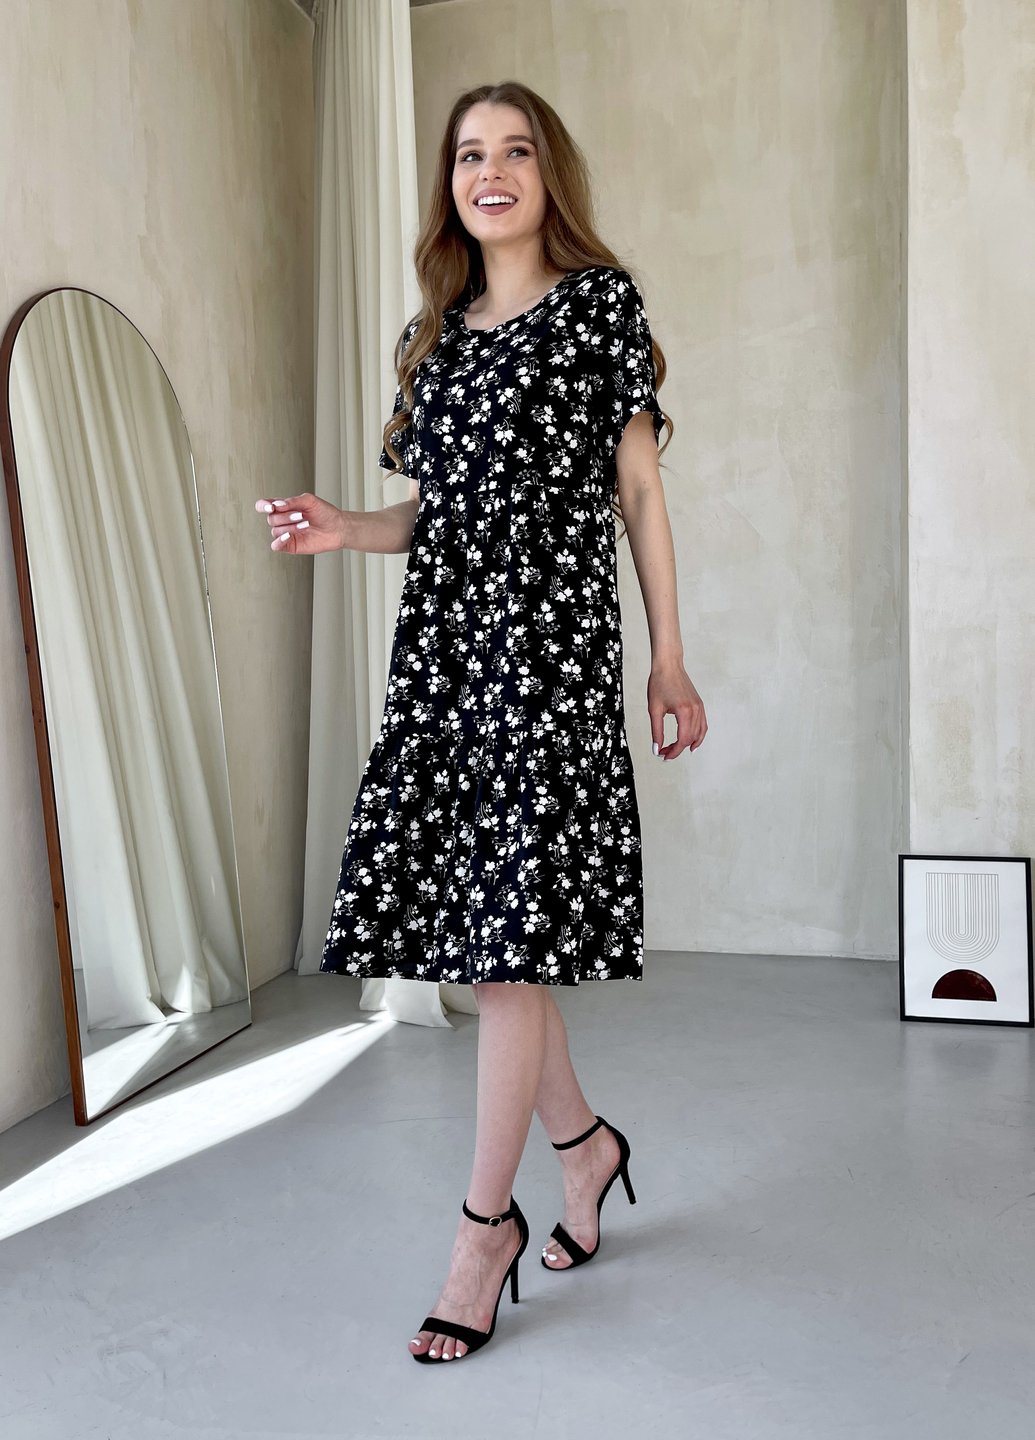 Купить Женское платье до колена с цветочным принтом и коротким рукавом черное Merlini Ферро 700000263, размер 42-44 (S-M) в интернет-магазине